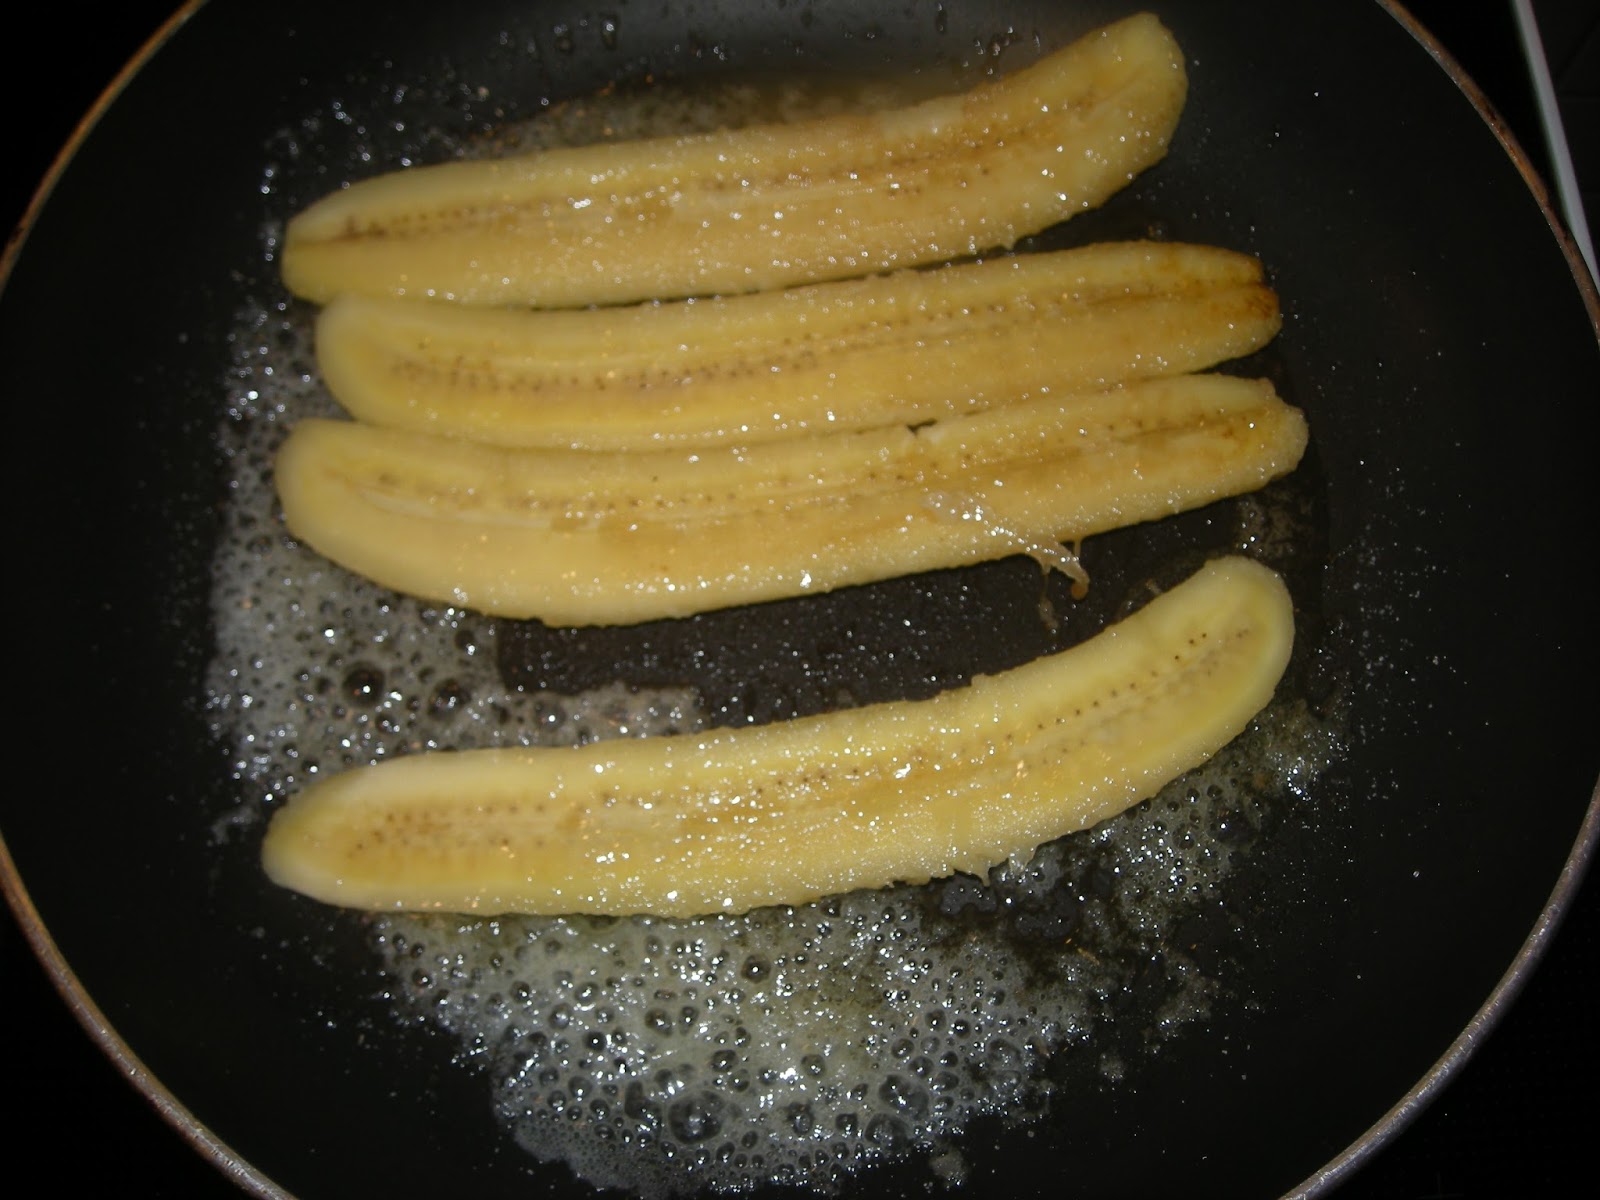 Heiner kocht! : Karamelisierte Bananen mit Vanilleeis - der Nachtisch ...